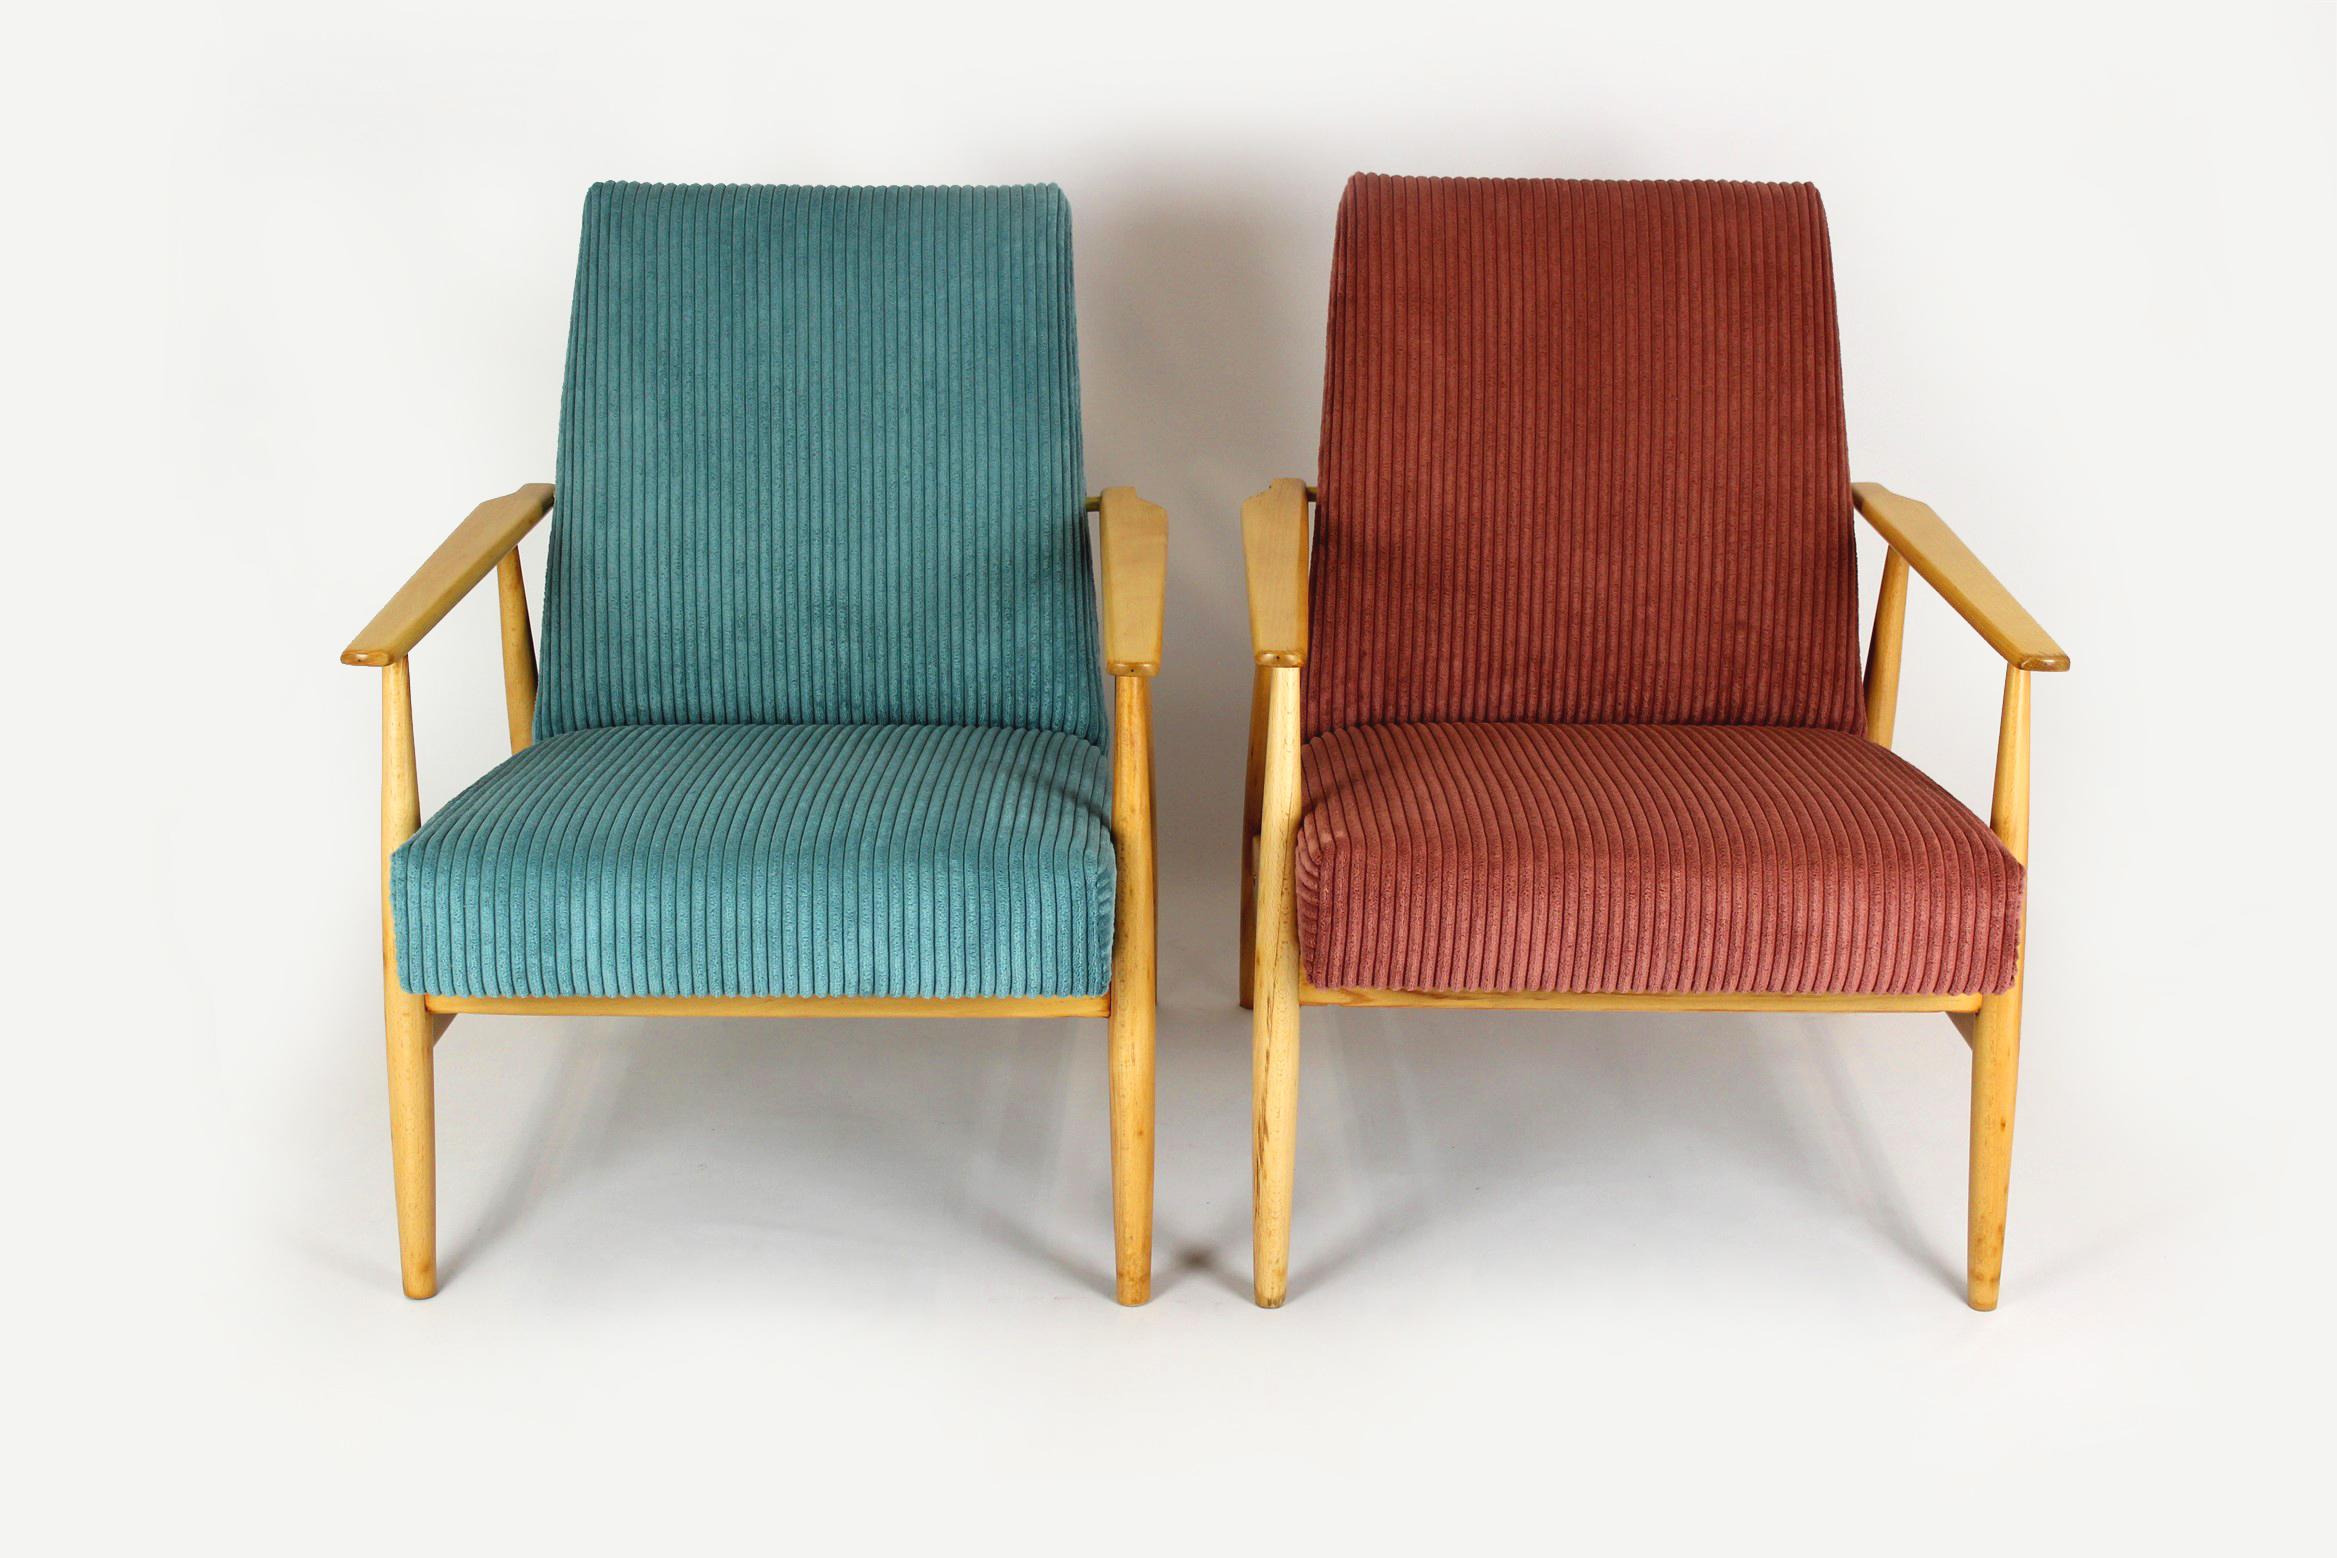 
Paire de fauteuils en bois de hêtre produits au milieu des années 1960 en Pologne. Ces fauteuils ont été entièrement restaurés. Le bois a été laqué en finition satinée. Les sièges ont été renouvelés, revêtus d'un tissu turquoise et rose offrant une